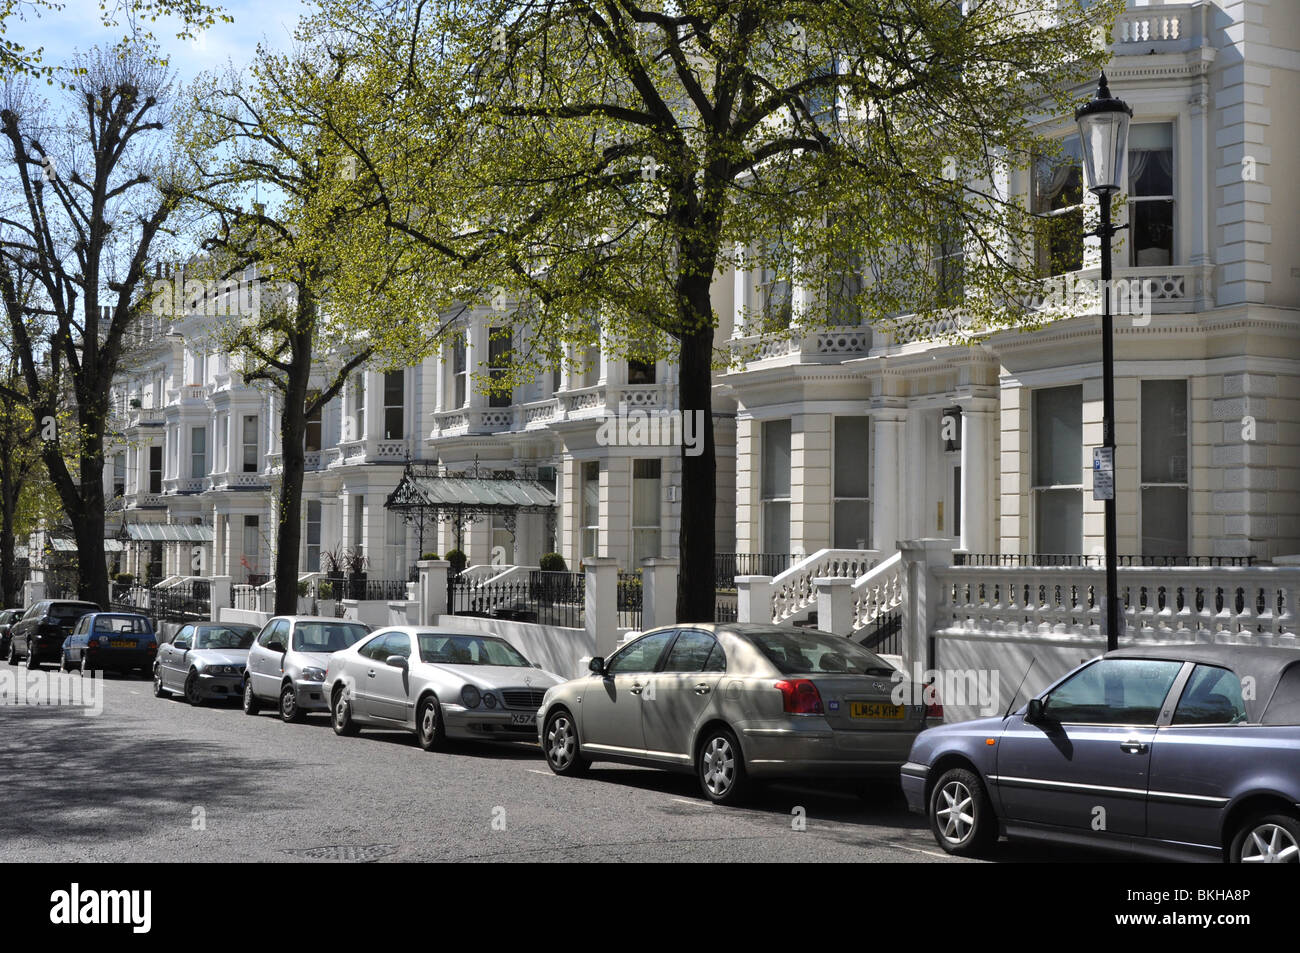 Holland Park-une rue de maisons de luxe dans la région de West London UK Banque D'Images